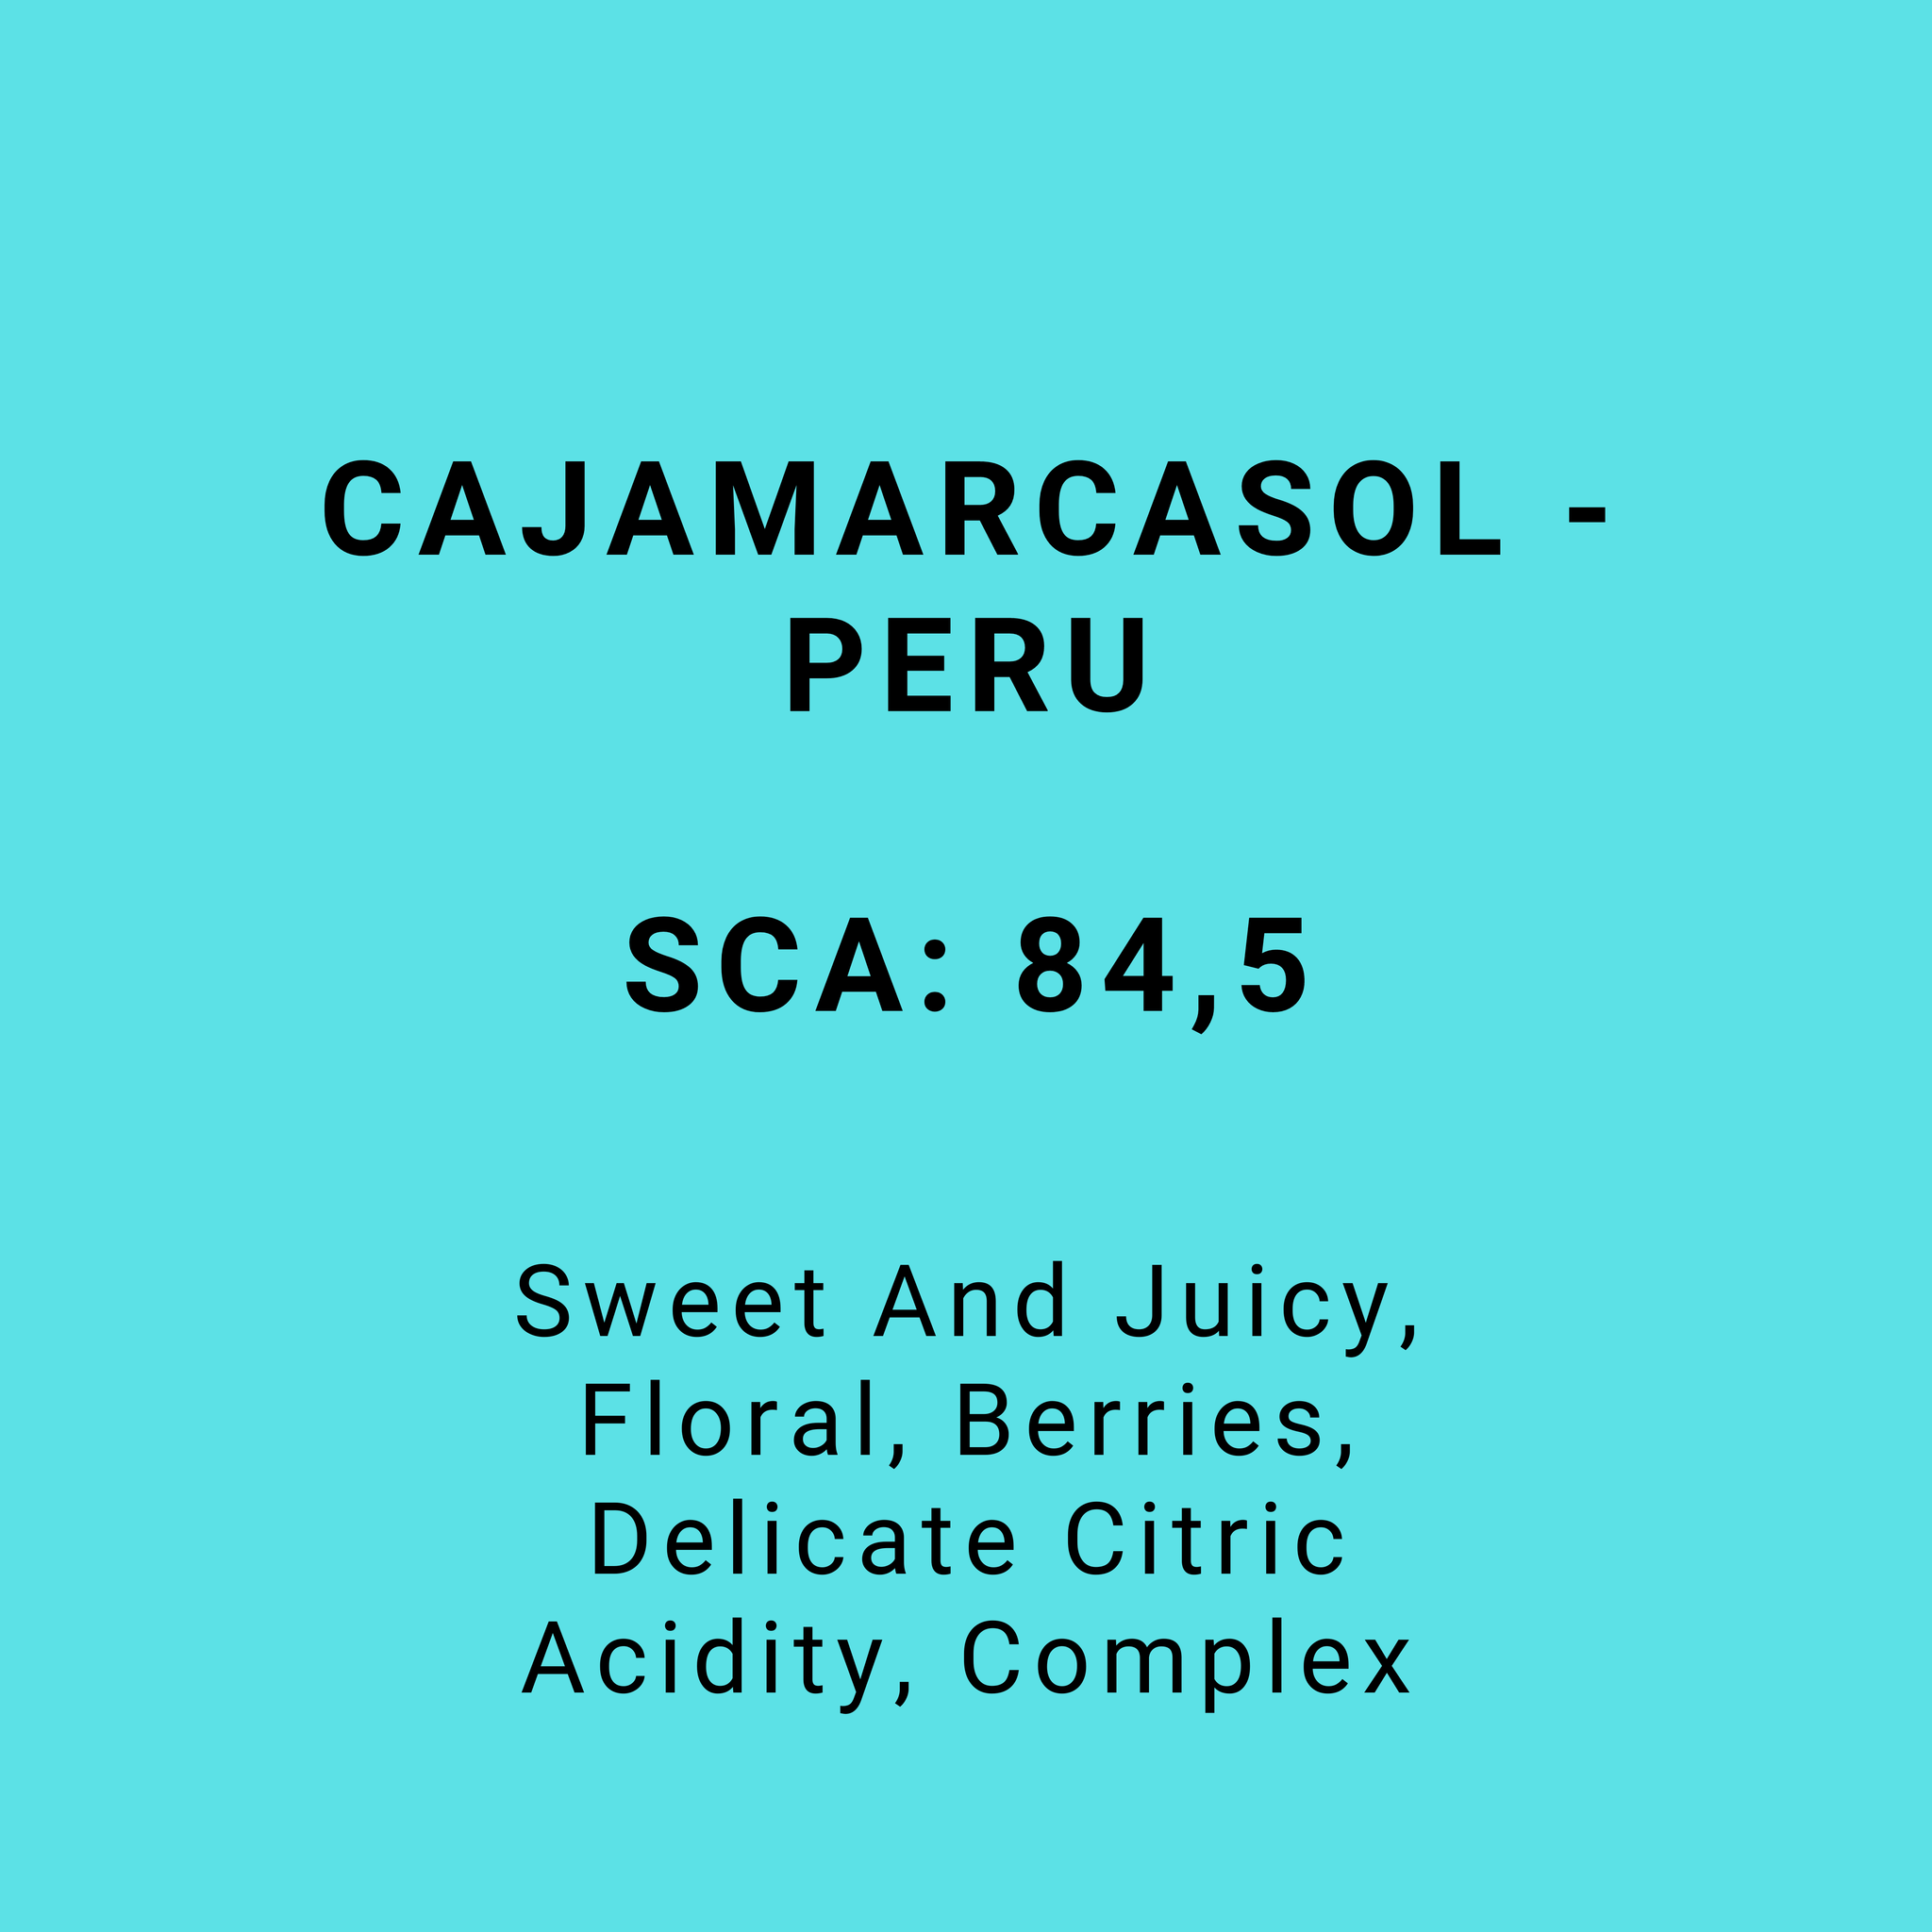 CAJAMARCASOL - PERU